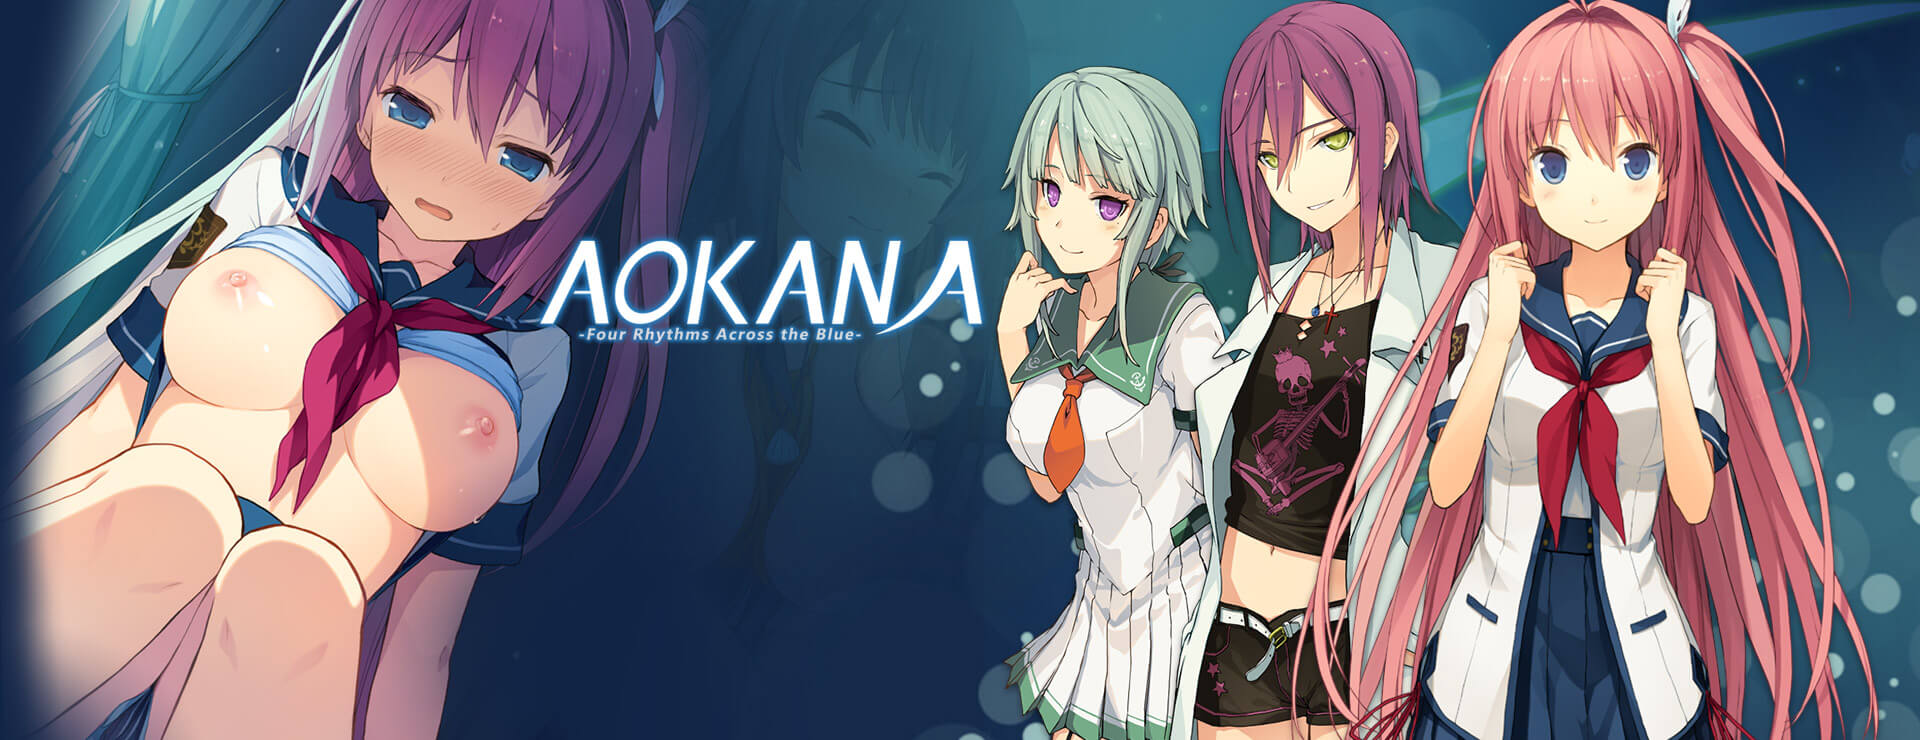 Aokana - Four Rhythms Across the Blue - 虚拟小说 遊戲